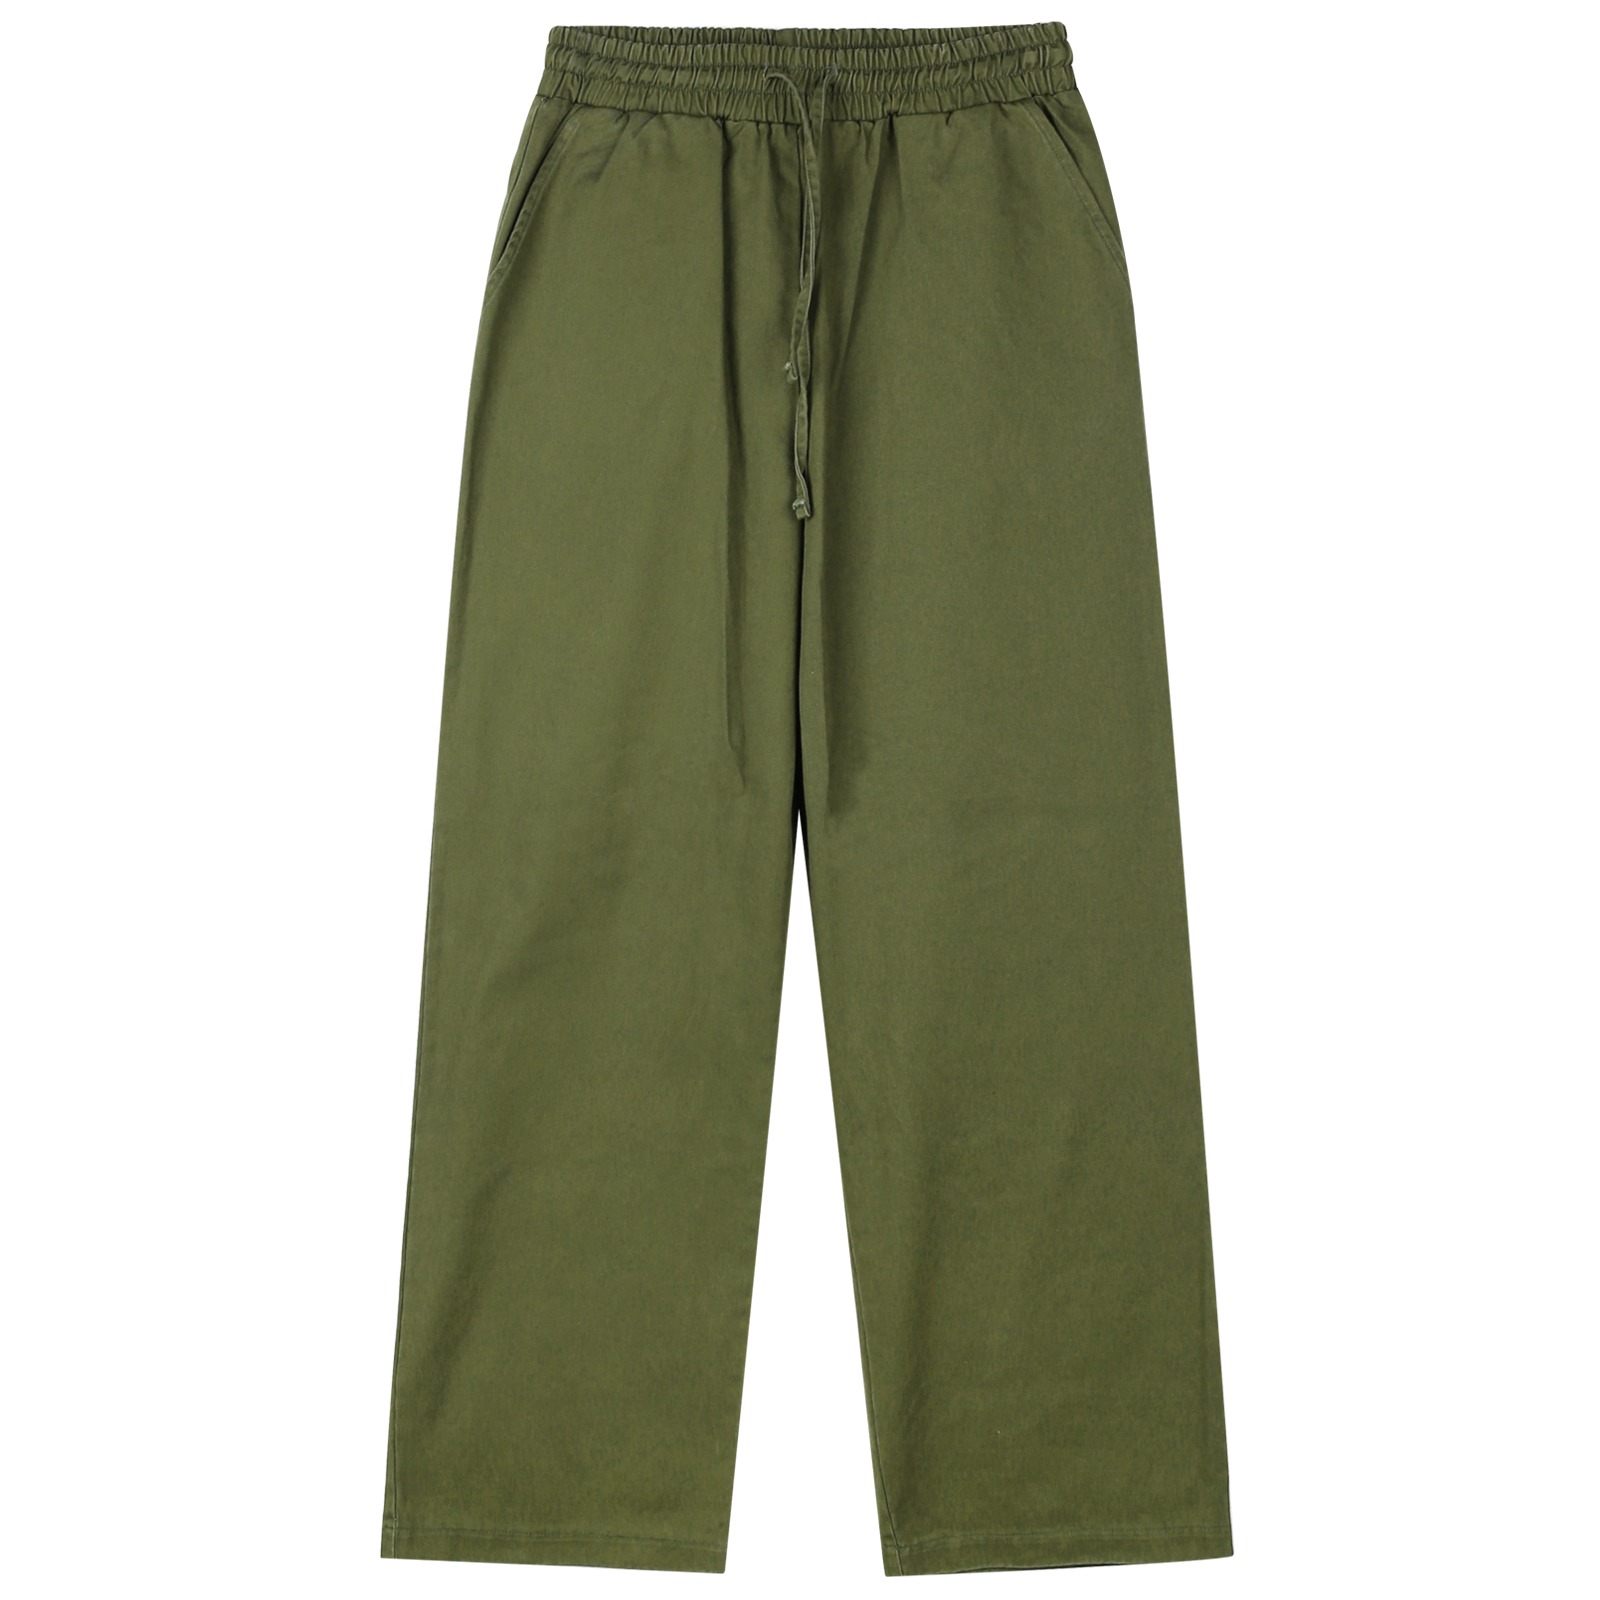 V149 wide cotton banding pants (khaki)